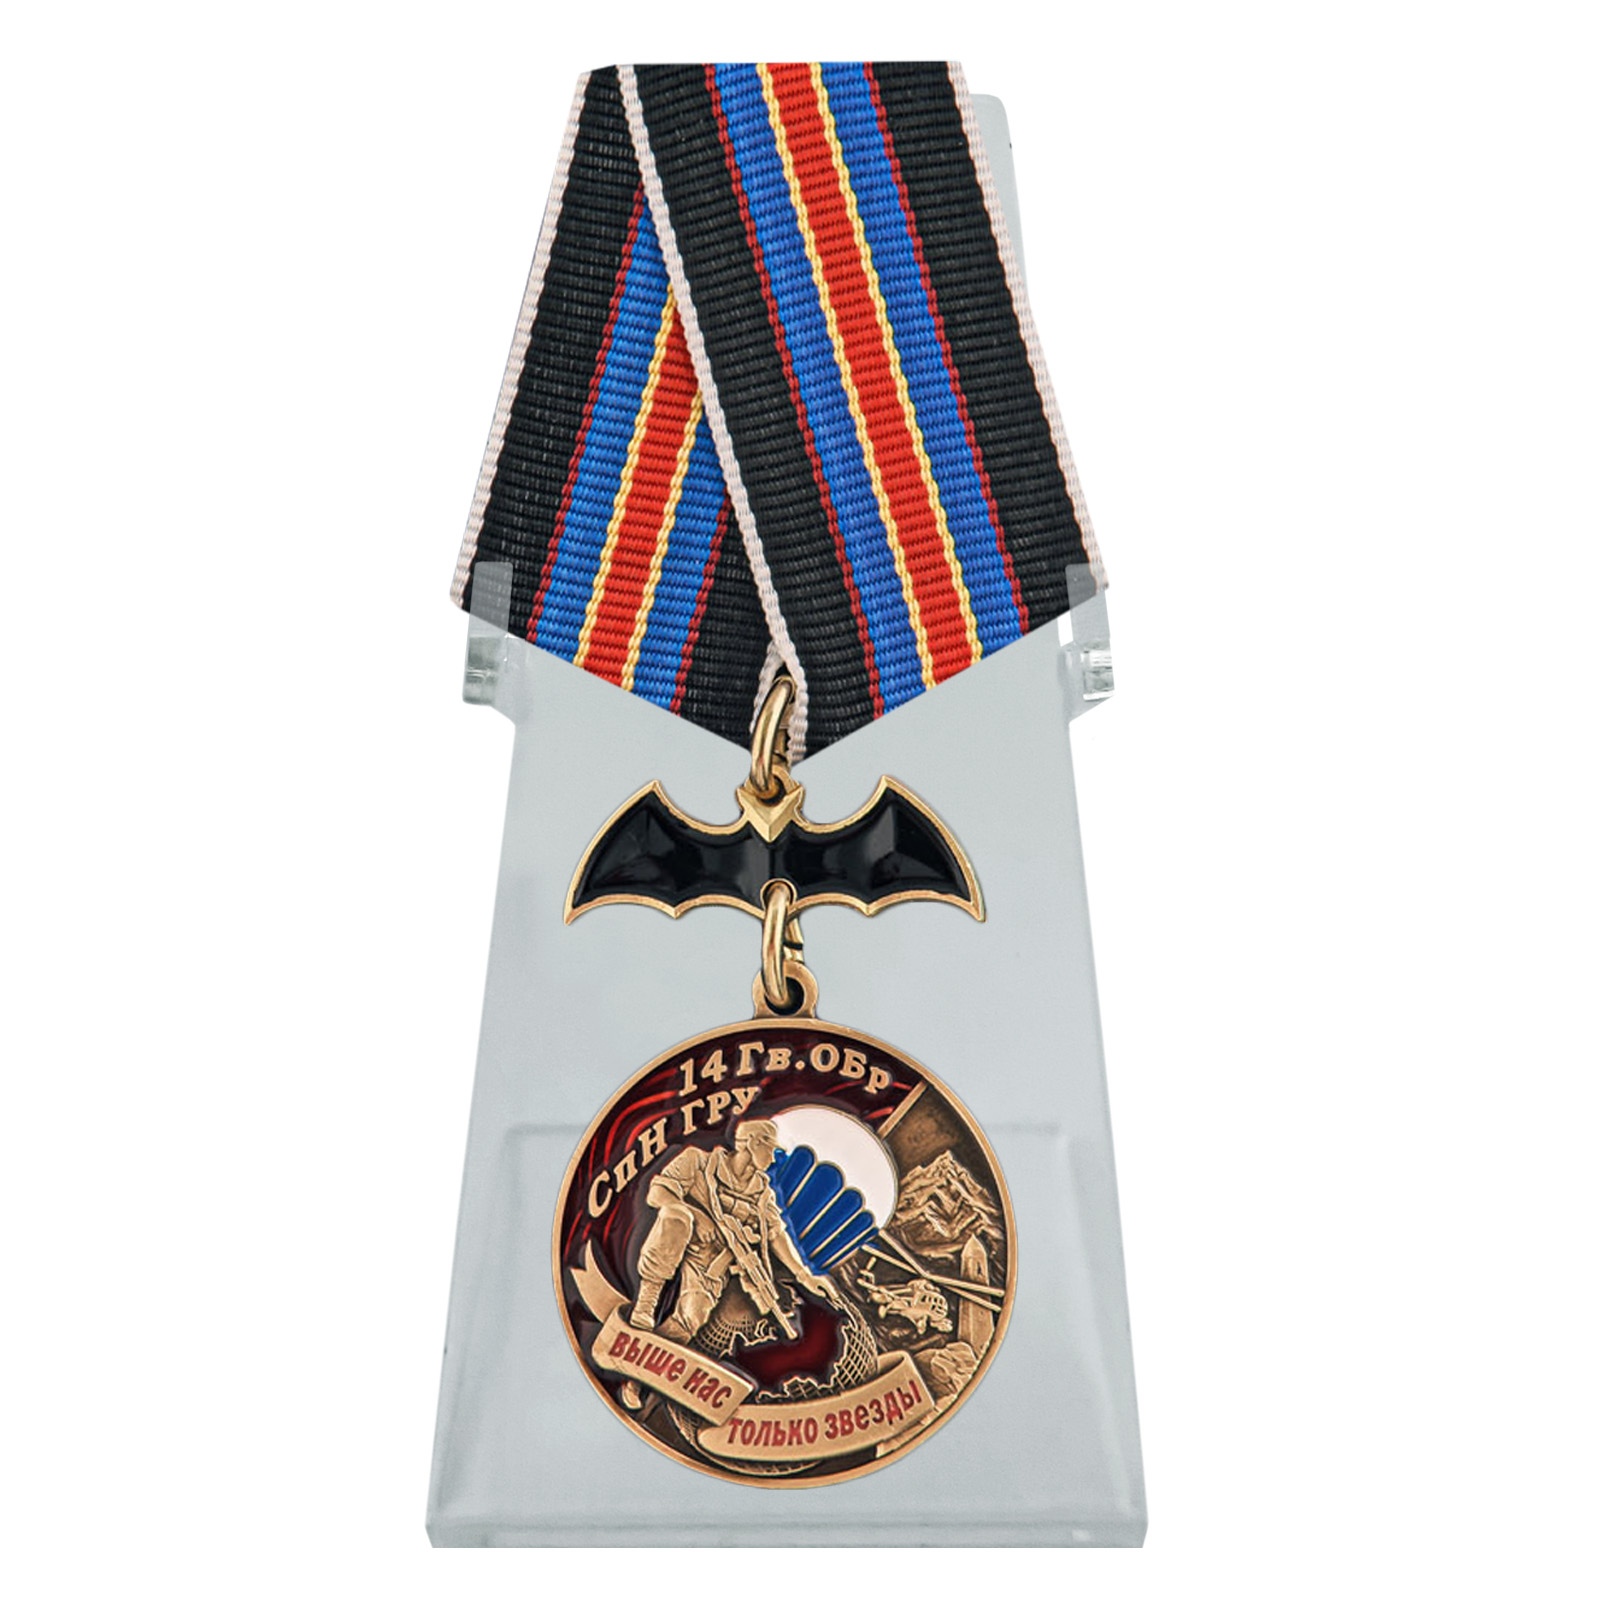 Купить медаль 14 Гв. ОБрСпН ГРУ на подставке по специальной цене